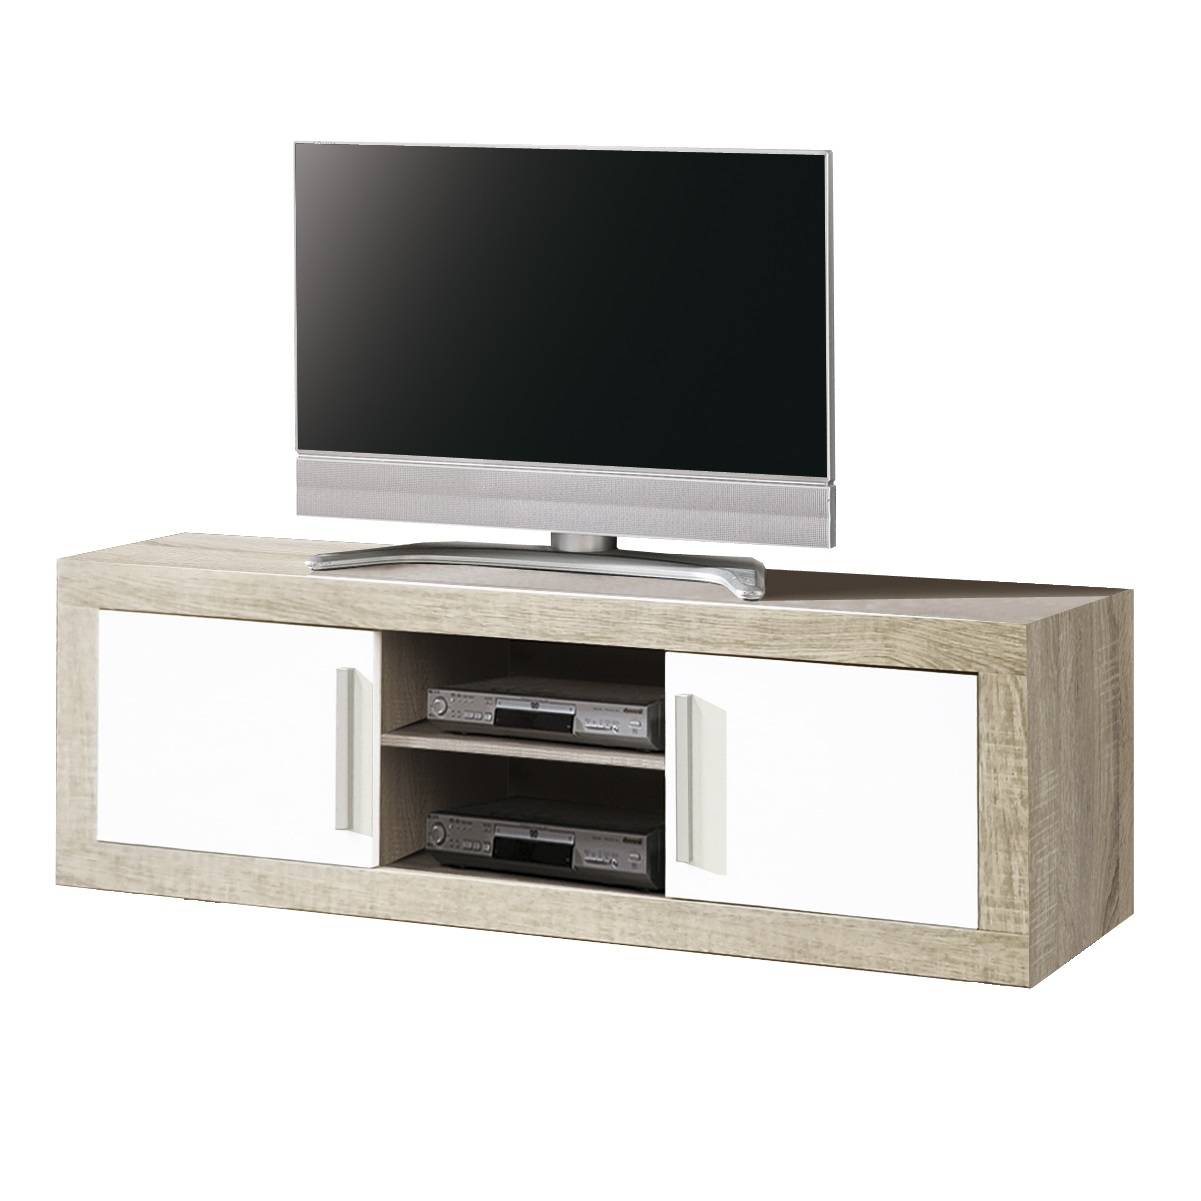 Mesa TV Ancha Roble-Blanco - Mesa TV de 180 cm. para salón/comedor, color roble claro combinado con blanco